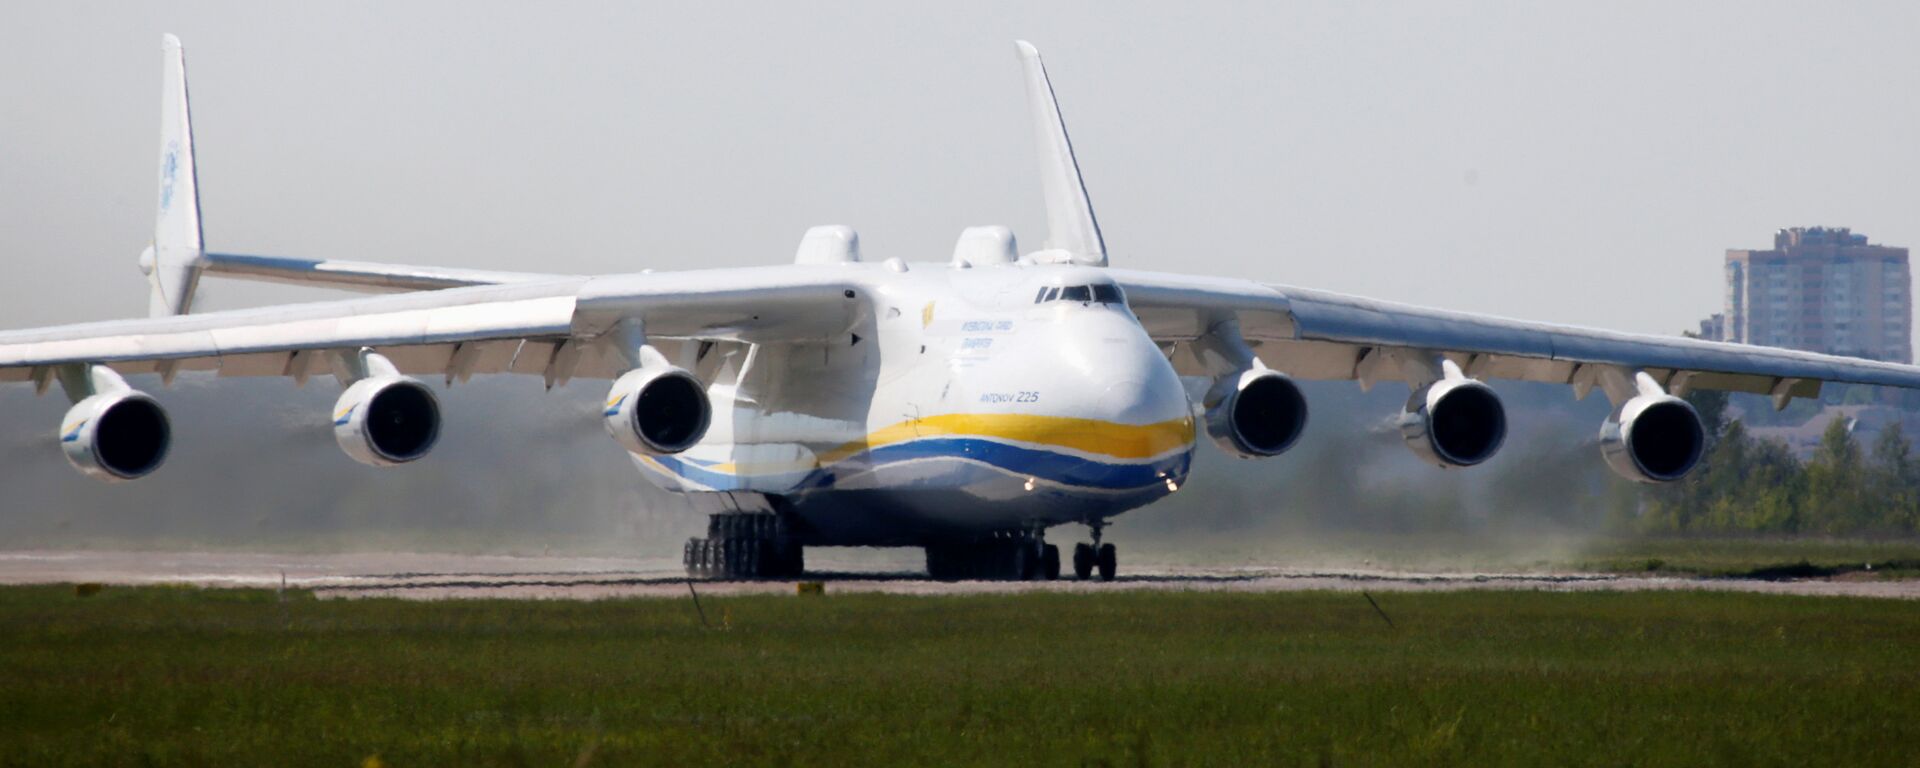 O An-225 Mriya, o maior avião de transporte do mundo, foi construído na Ucrânia durante os tempos soviéticos  - Sputnik Brasil, 1920, 12.01.2022